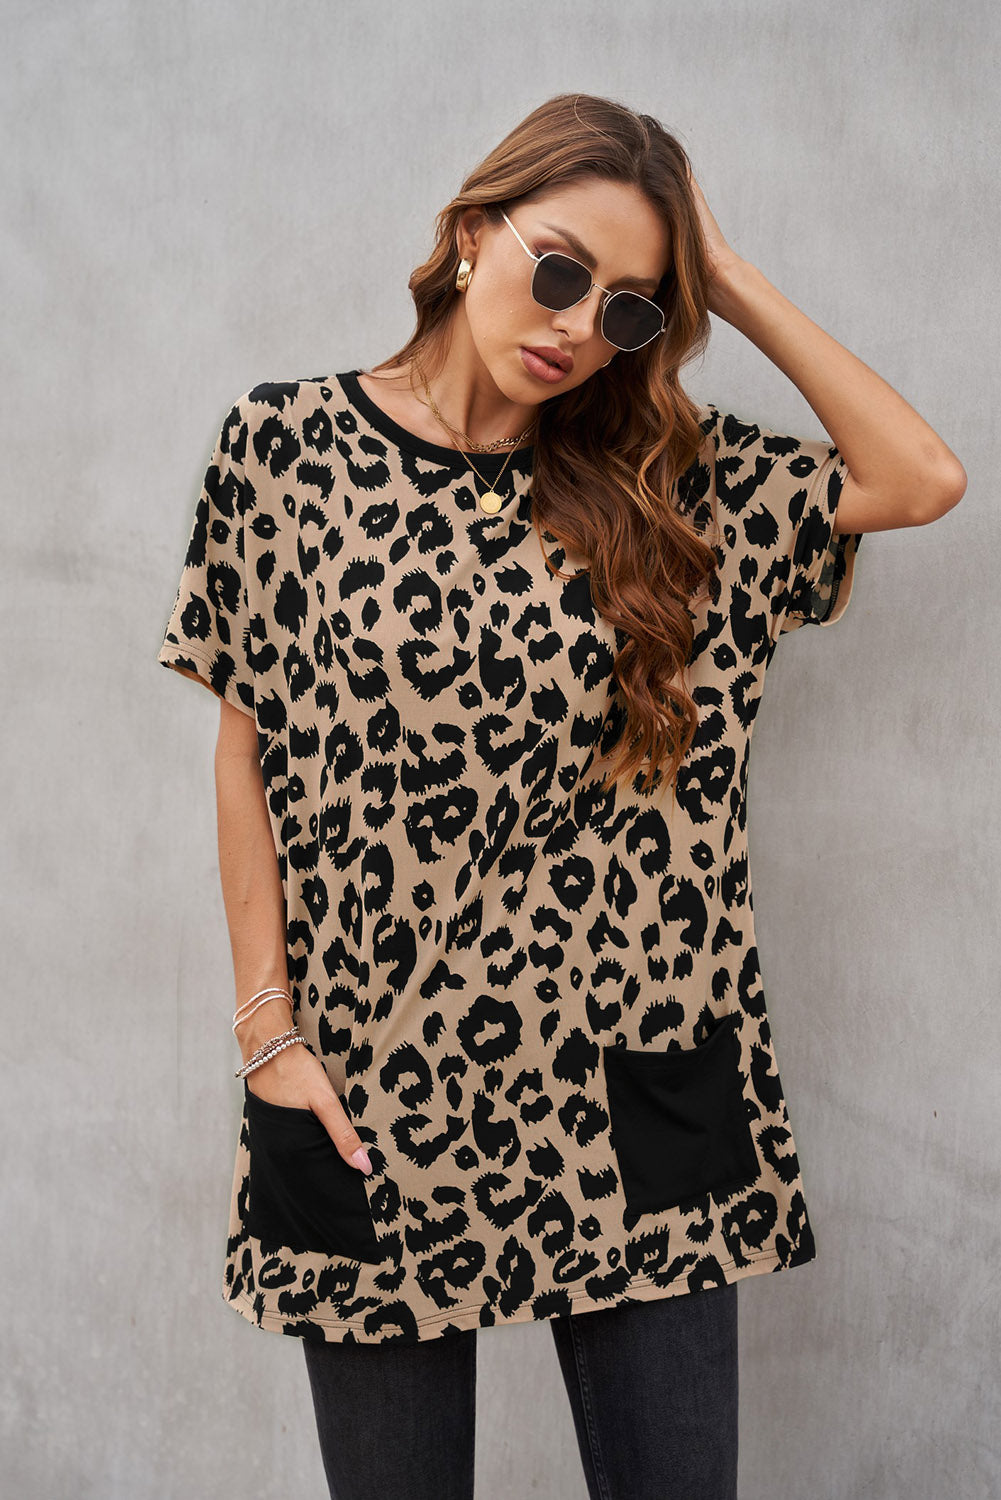 Robe T-shirt Courte Mmarron Poches Imprime Leopard Manches Courtes